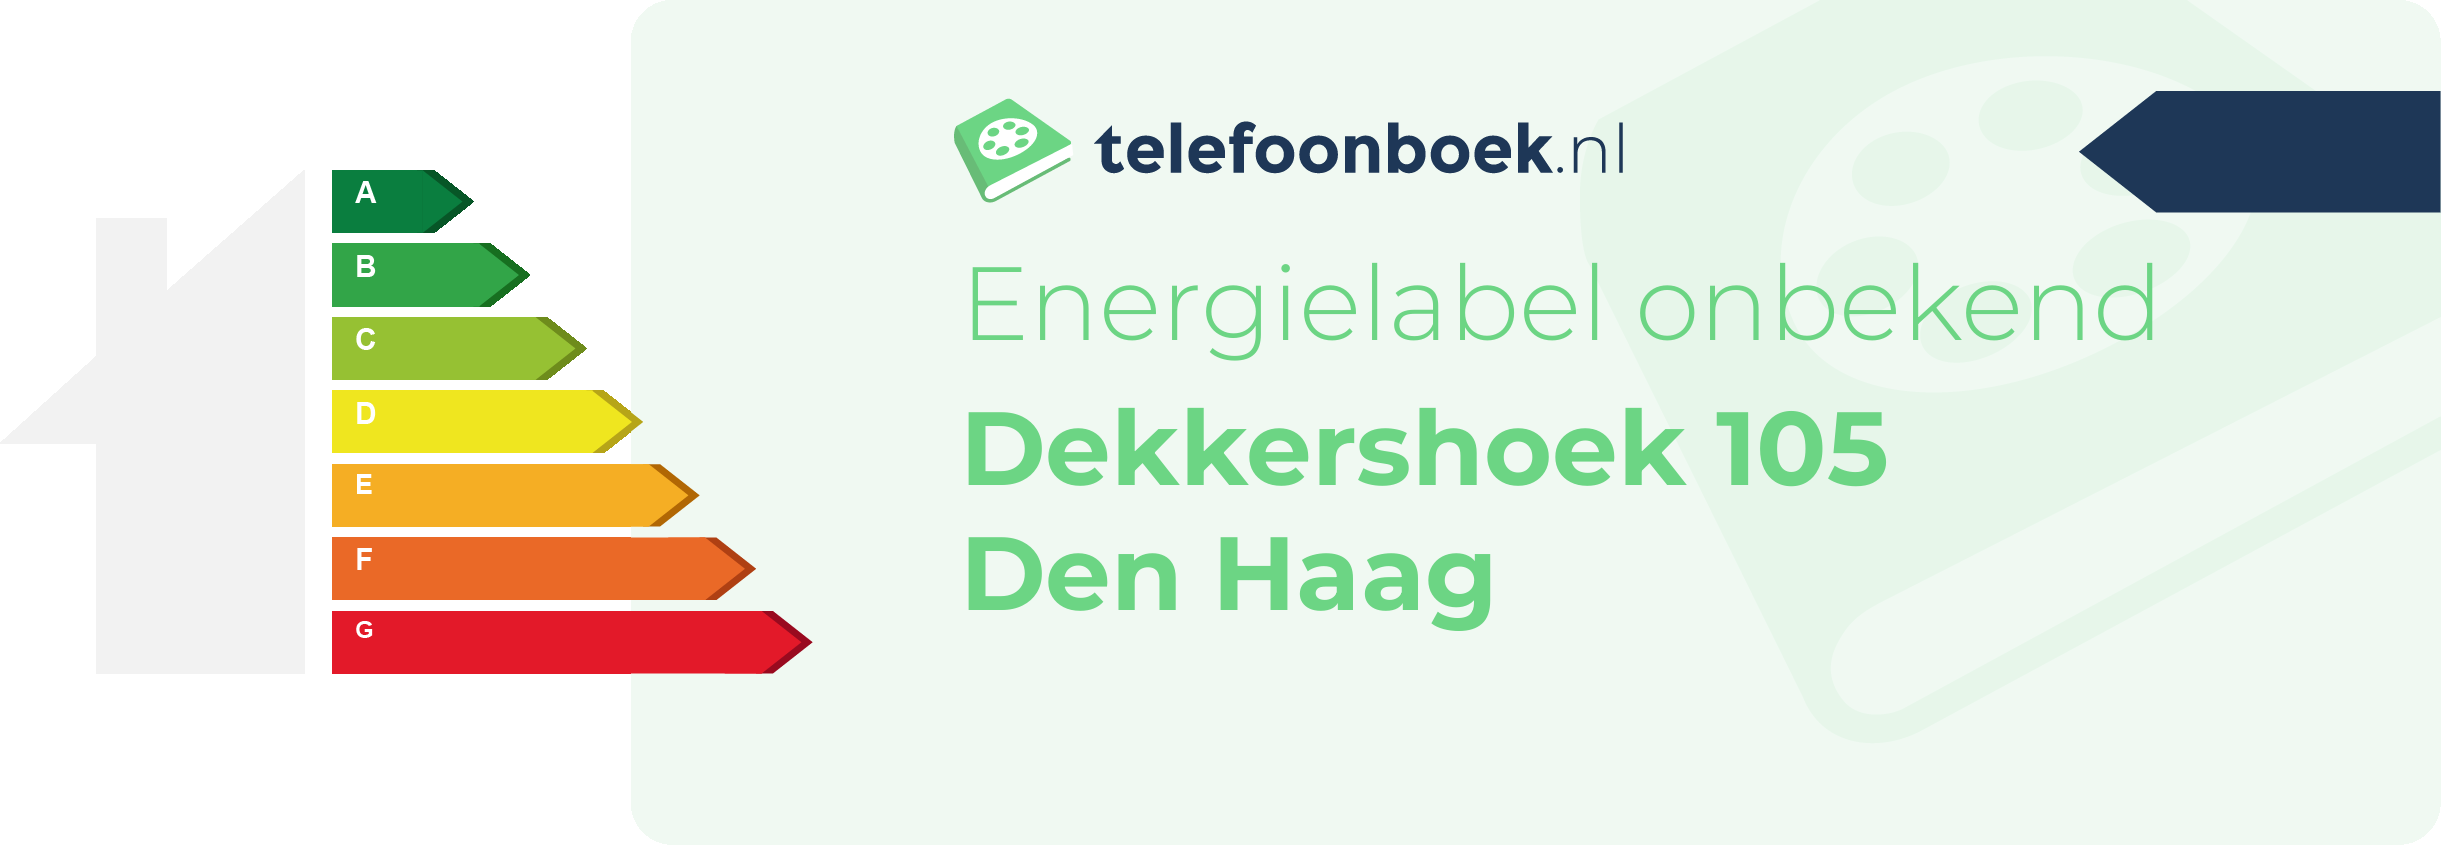 Energielabel Dekkershoek 105 Den Haag